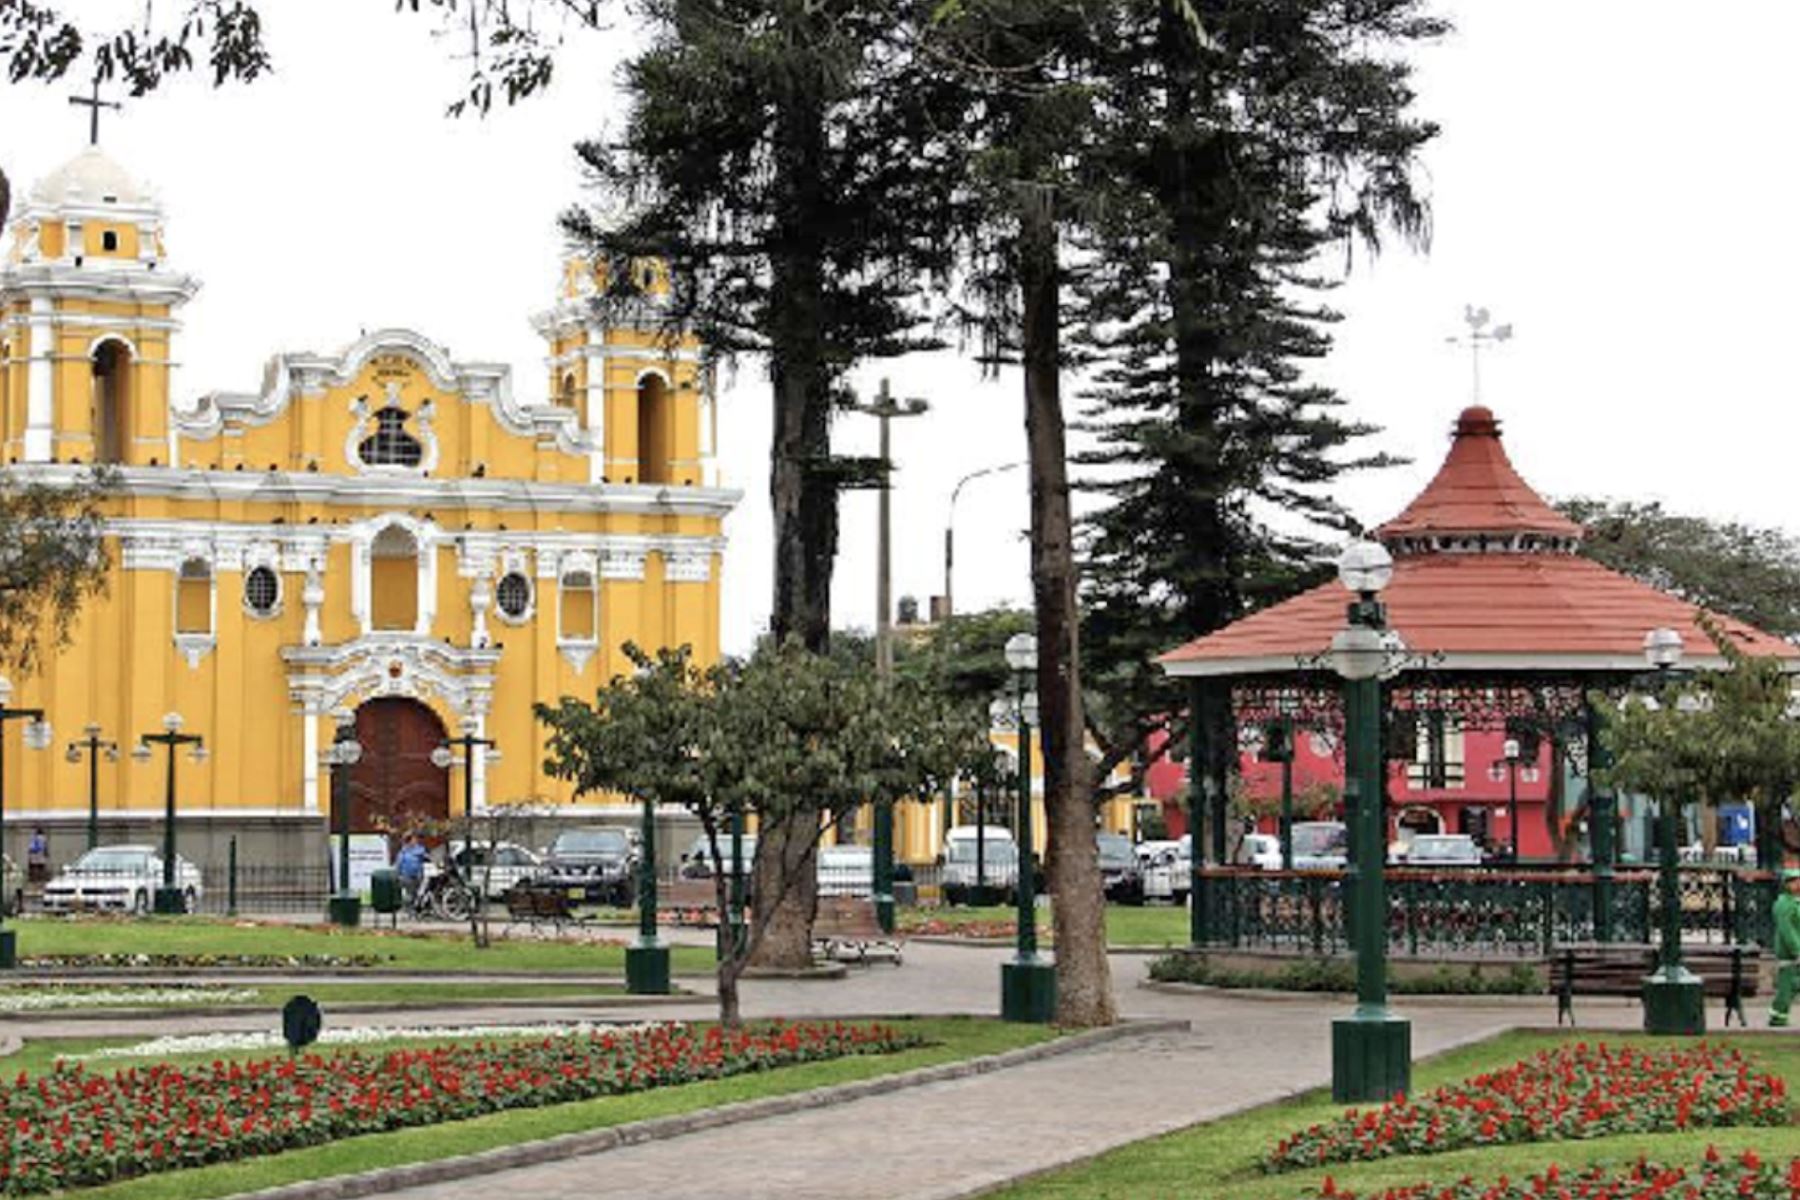 La municipalidad distrital de Santiago de Surco promueve la revalorización de todo lo concerniente al último reducto viñatero de Lima. Foto: INTERNET/Medios